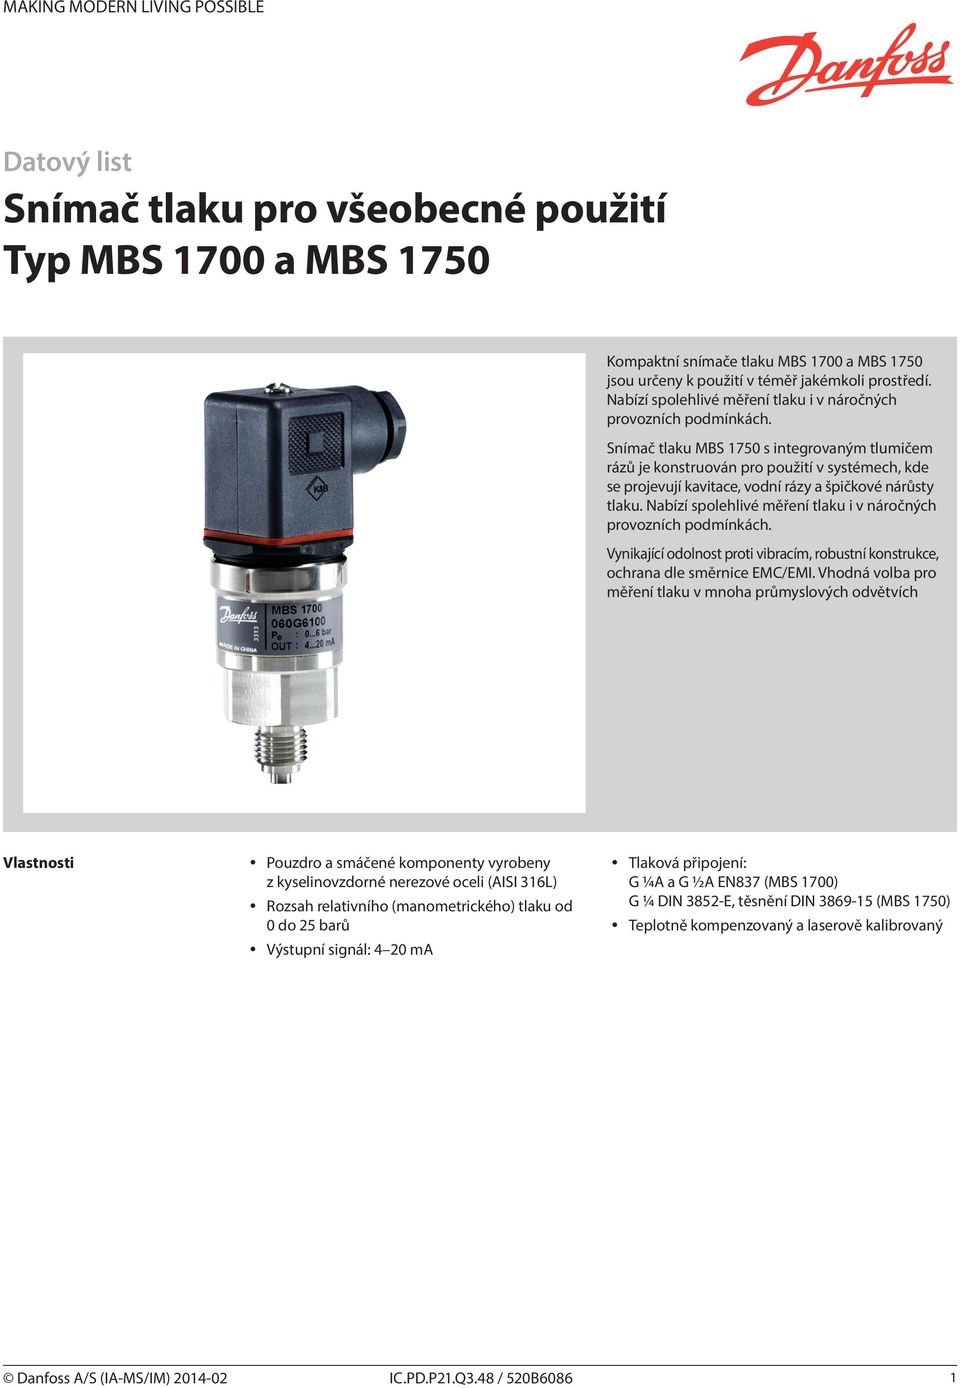 Snímač tlaku MBS 1750 s integrovaným tlumičem rázů je konstruován pro použití v systémech, kde se projevují kavitace, vodní rázy a špičkové nárůsty tlaku.